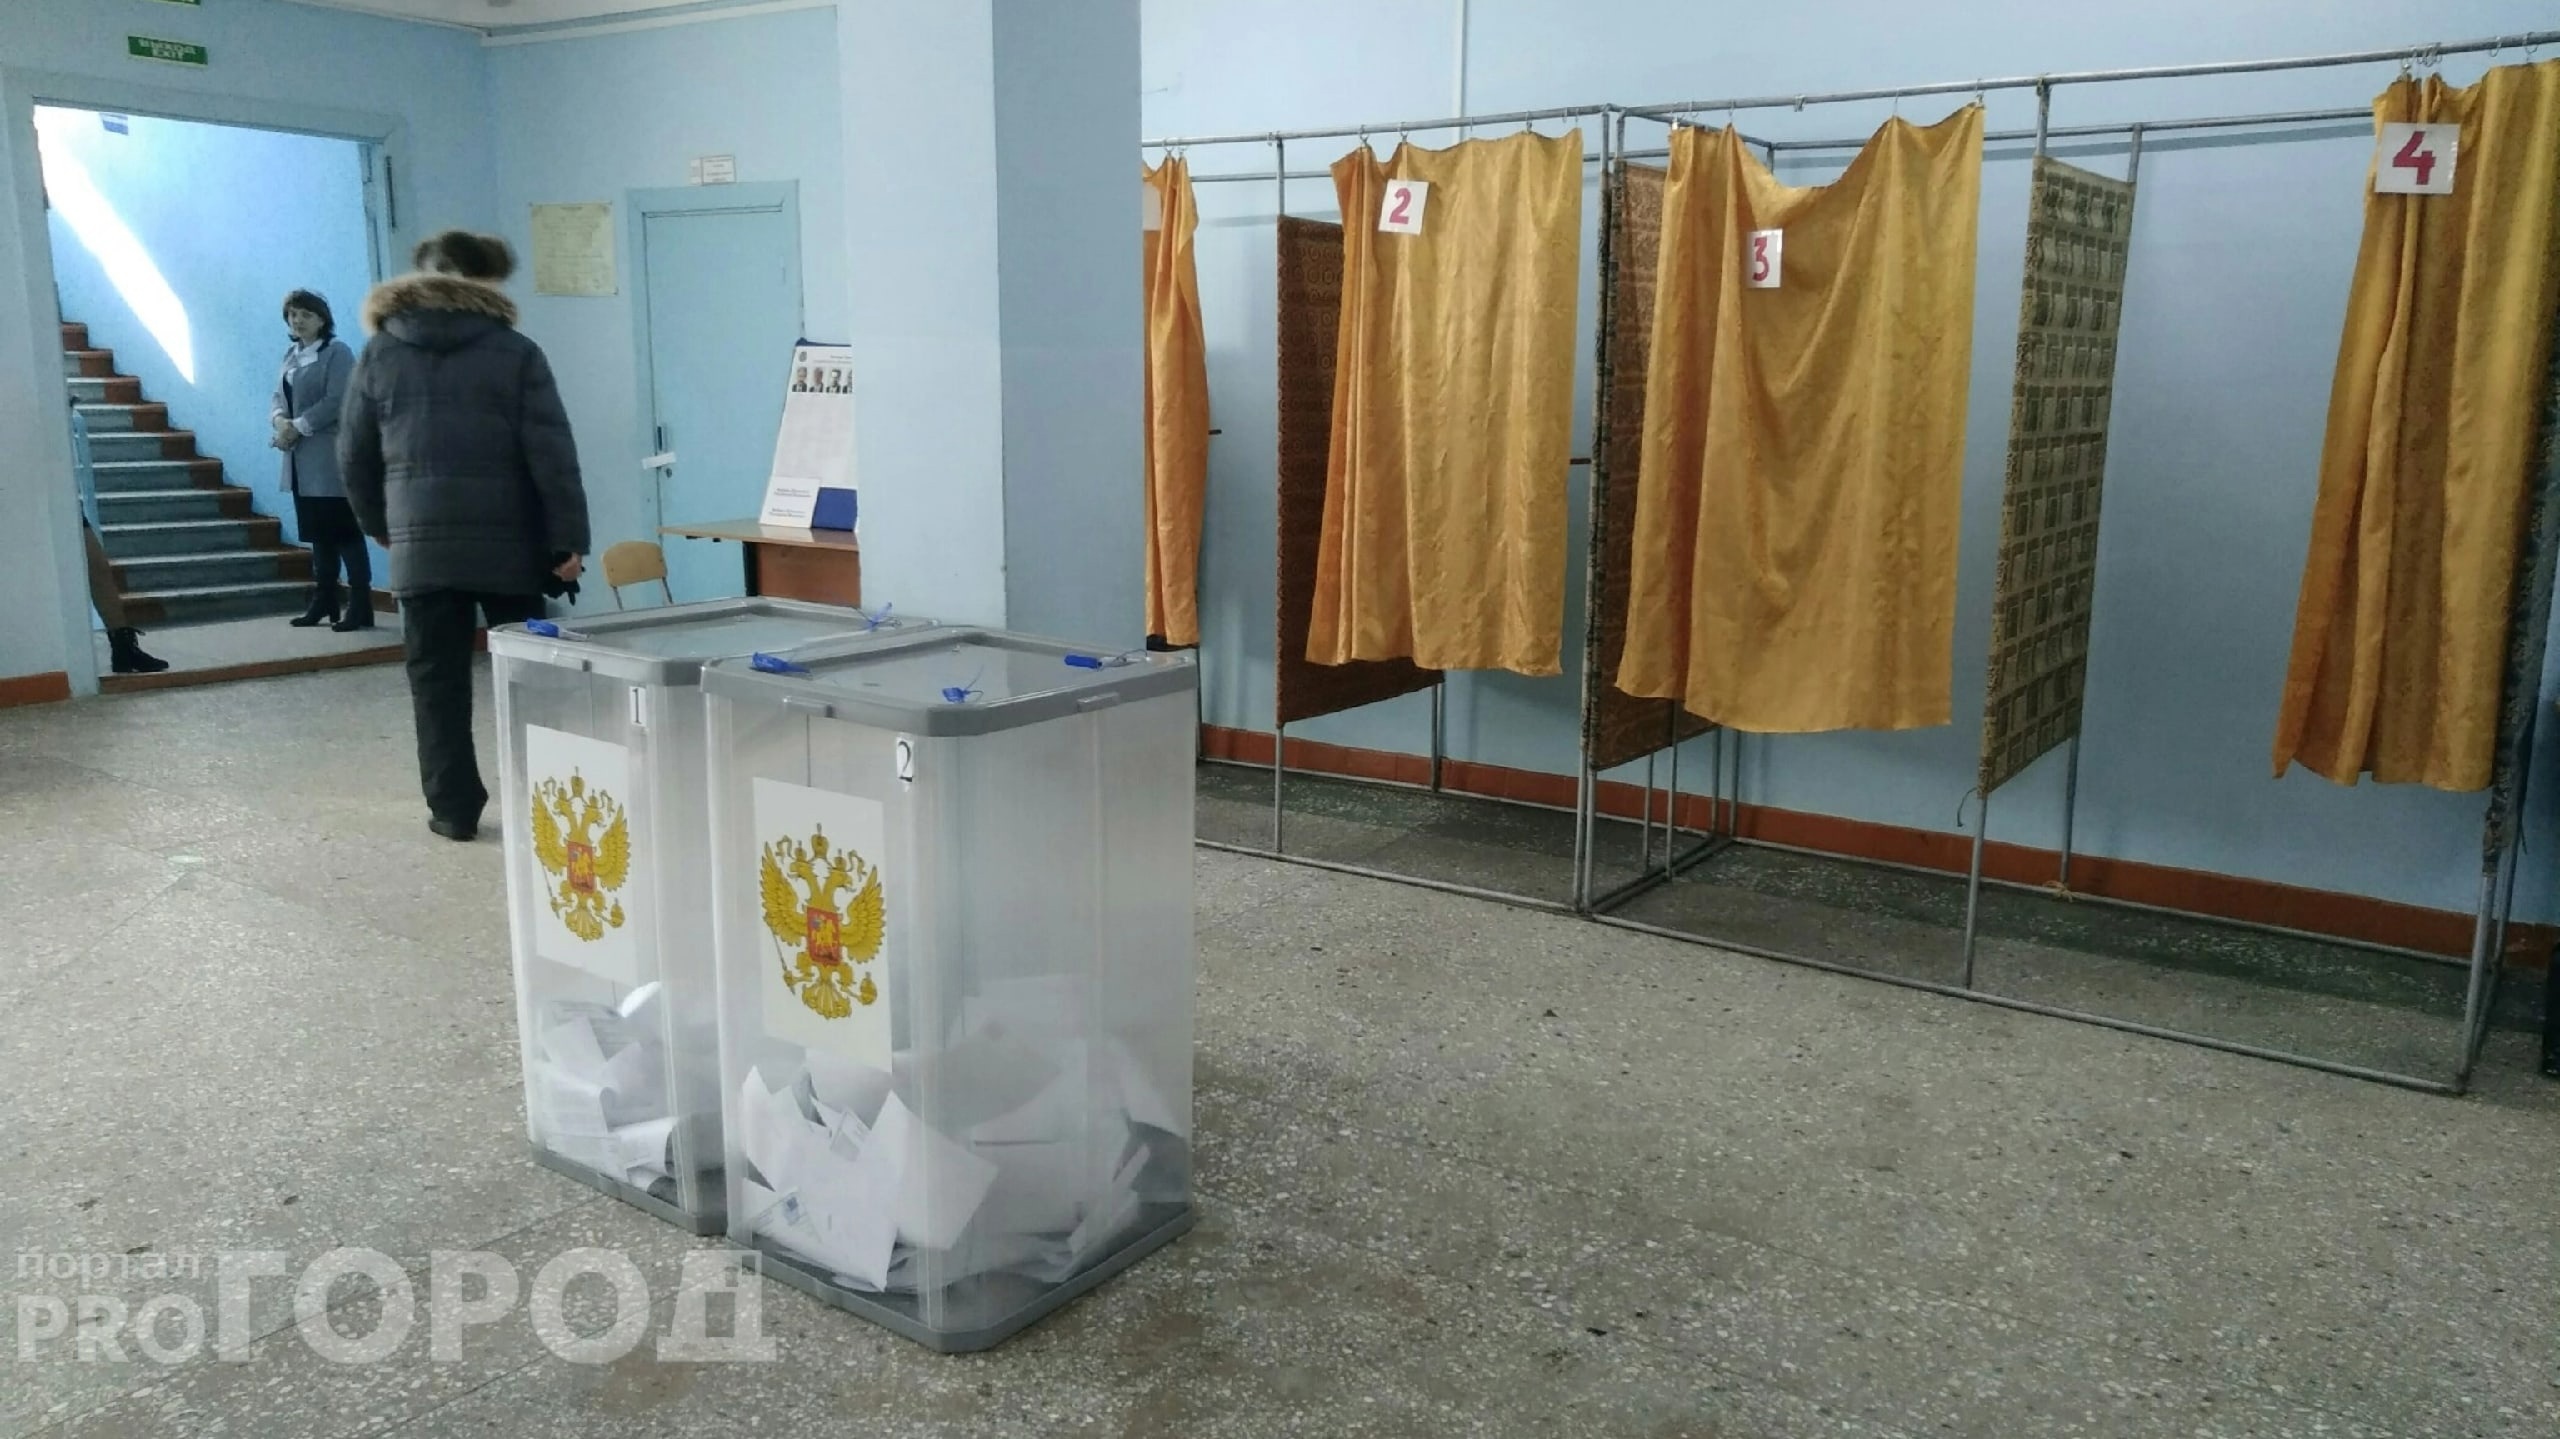 Власти Чебоксар проведут в апреле небольшие выборы